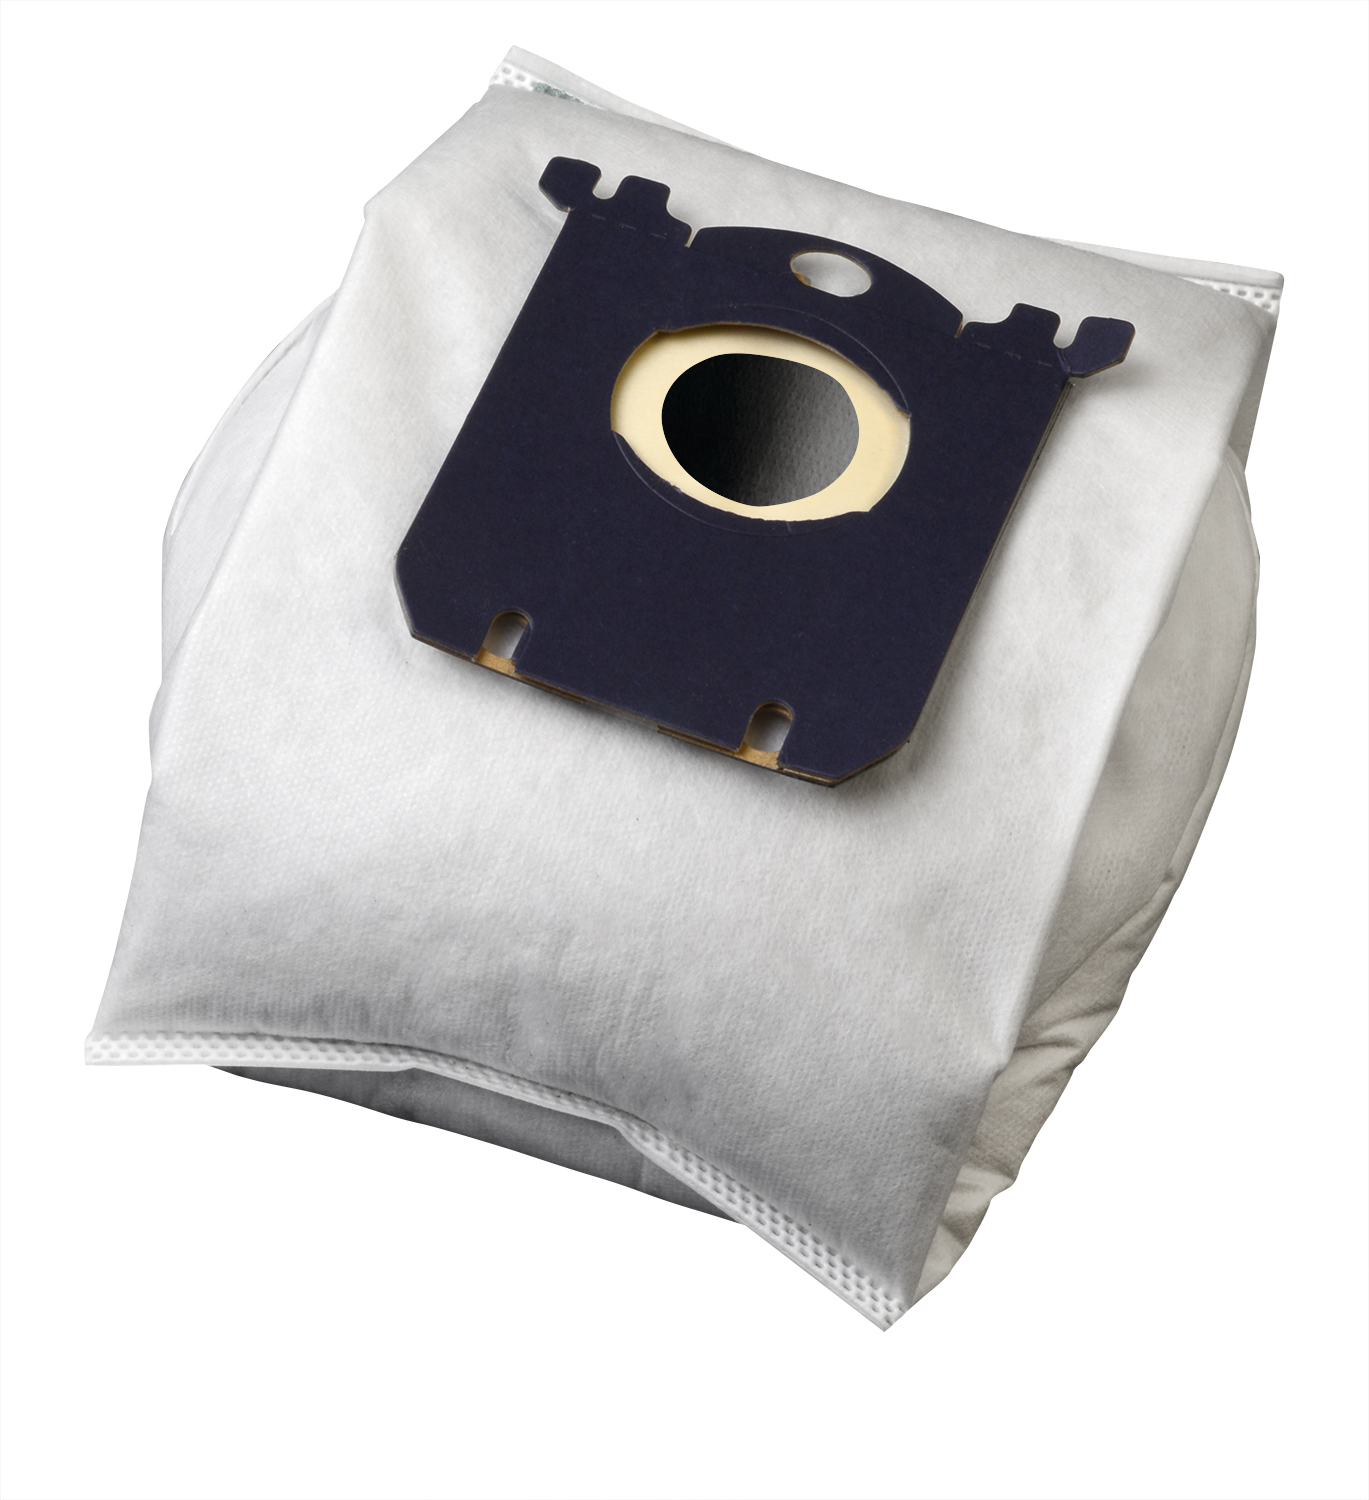 Koma SB02S - Sáčky do vysavače Electrolux Multi Bag textilní - kompatibilní se sáčky typu S-bag, 4ks